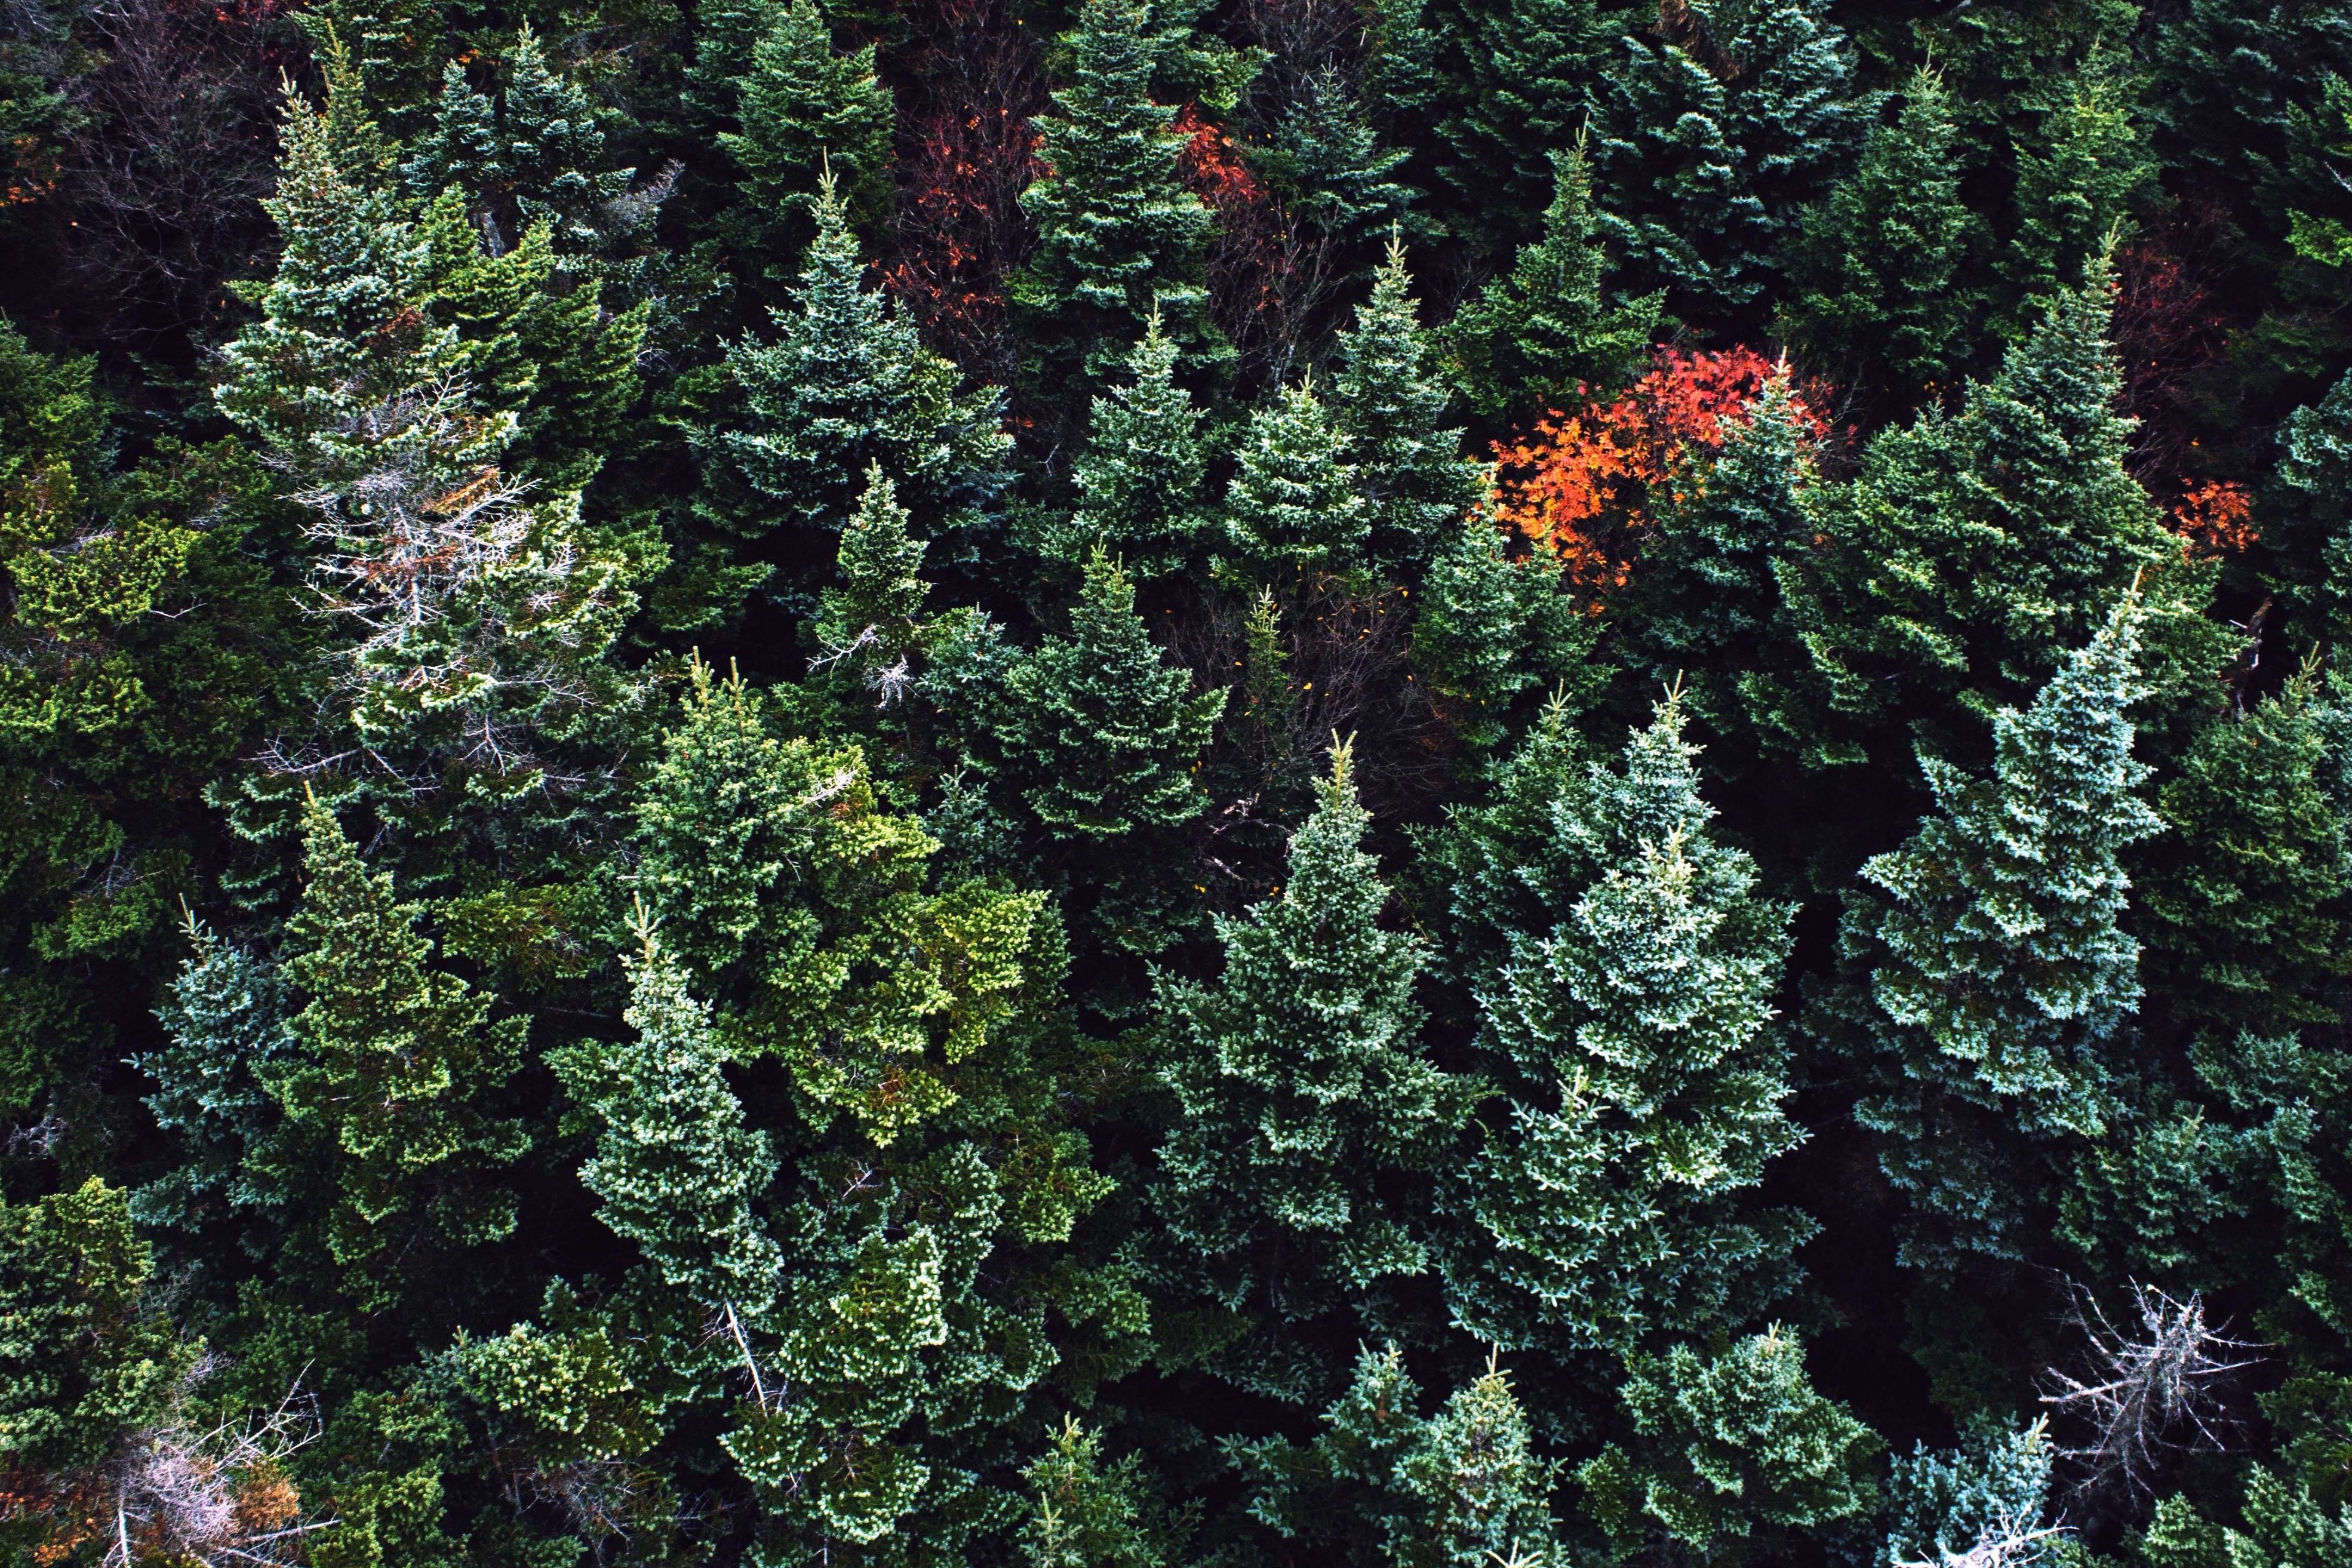 Foto gratis: Alberi, legno, colore, conifere, ambiente, sempreverde, abete, alberi, verde